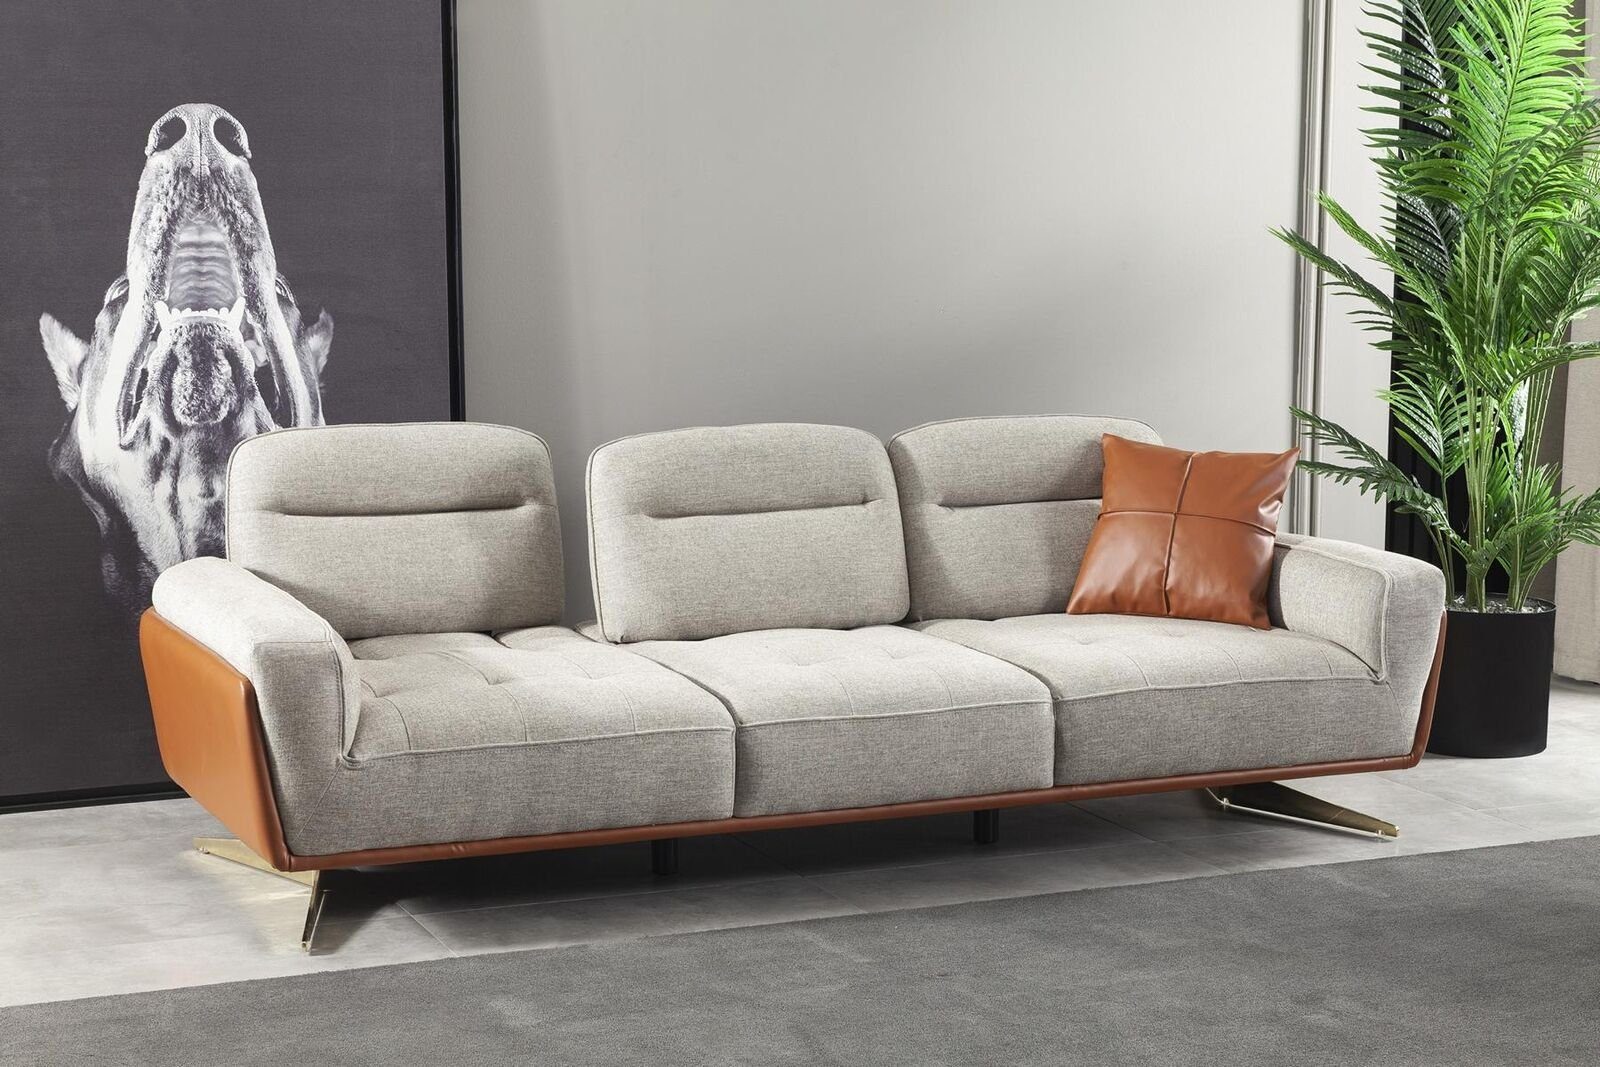 JVmoebel 4-Sitzer Gemütliche Couchen Stoffsofa, Teile, 1 Couch Sofas in Big Sofa Europa Wohnzimmer Made